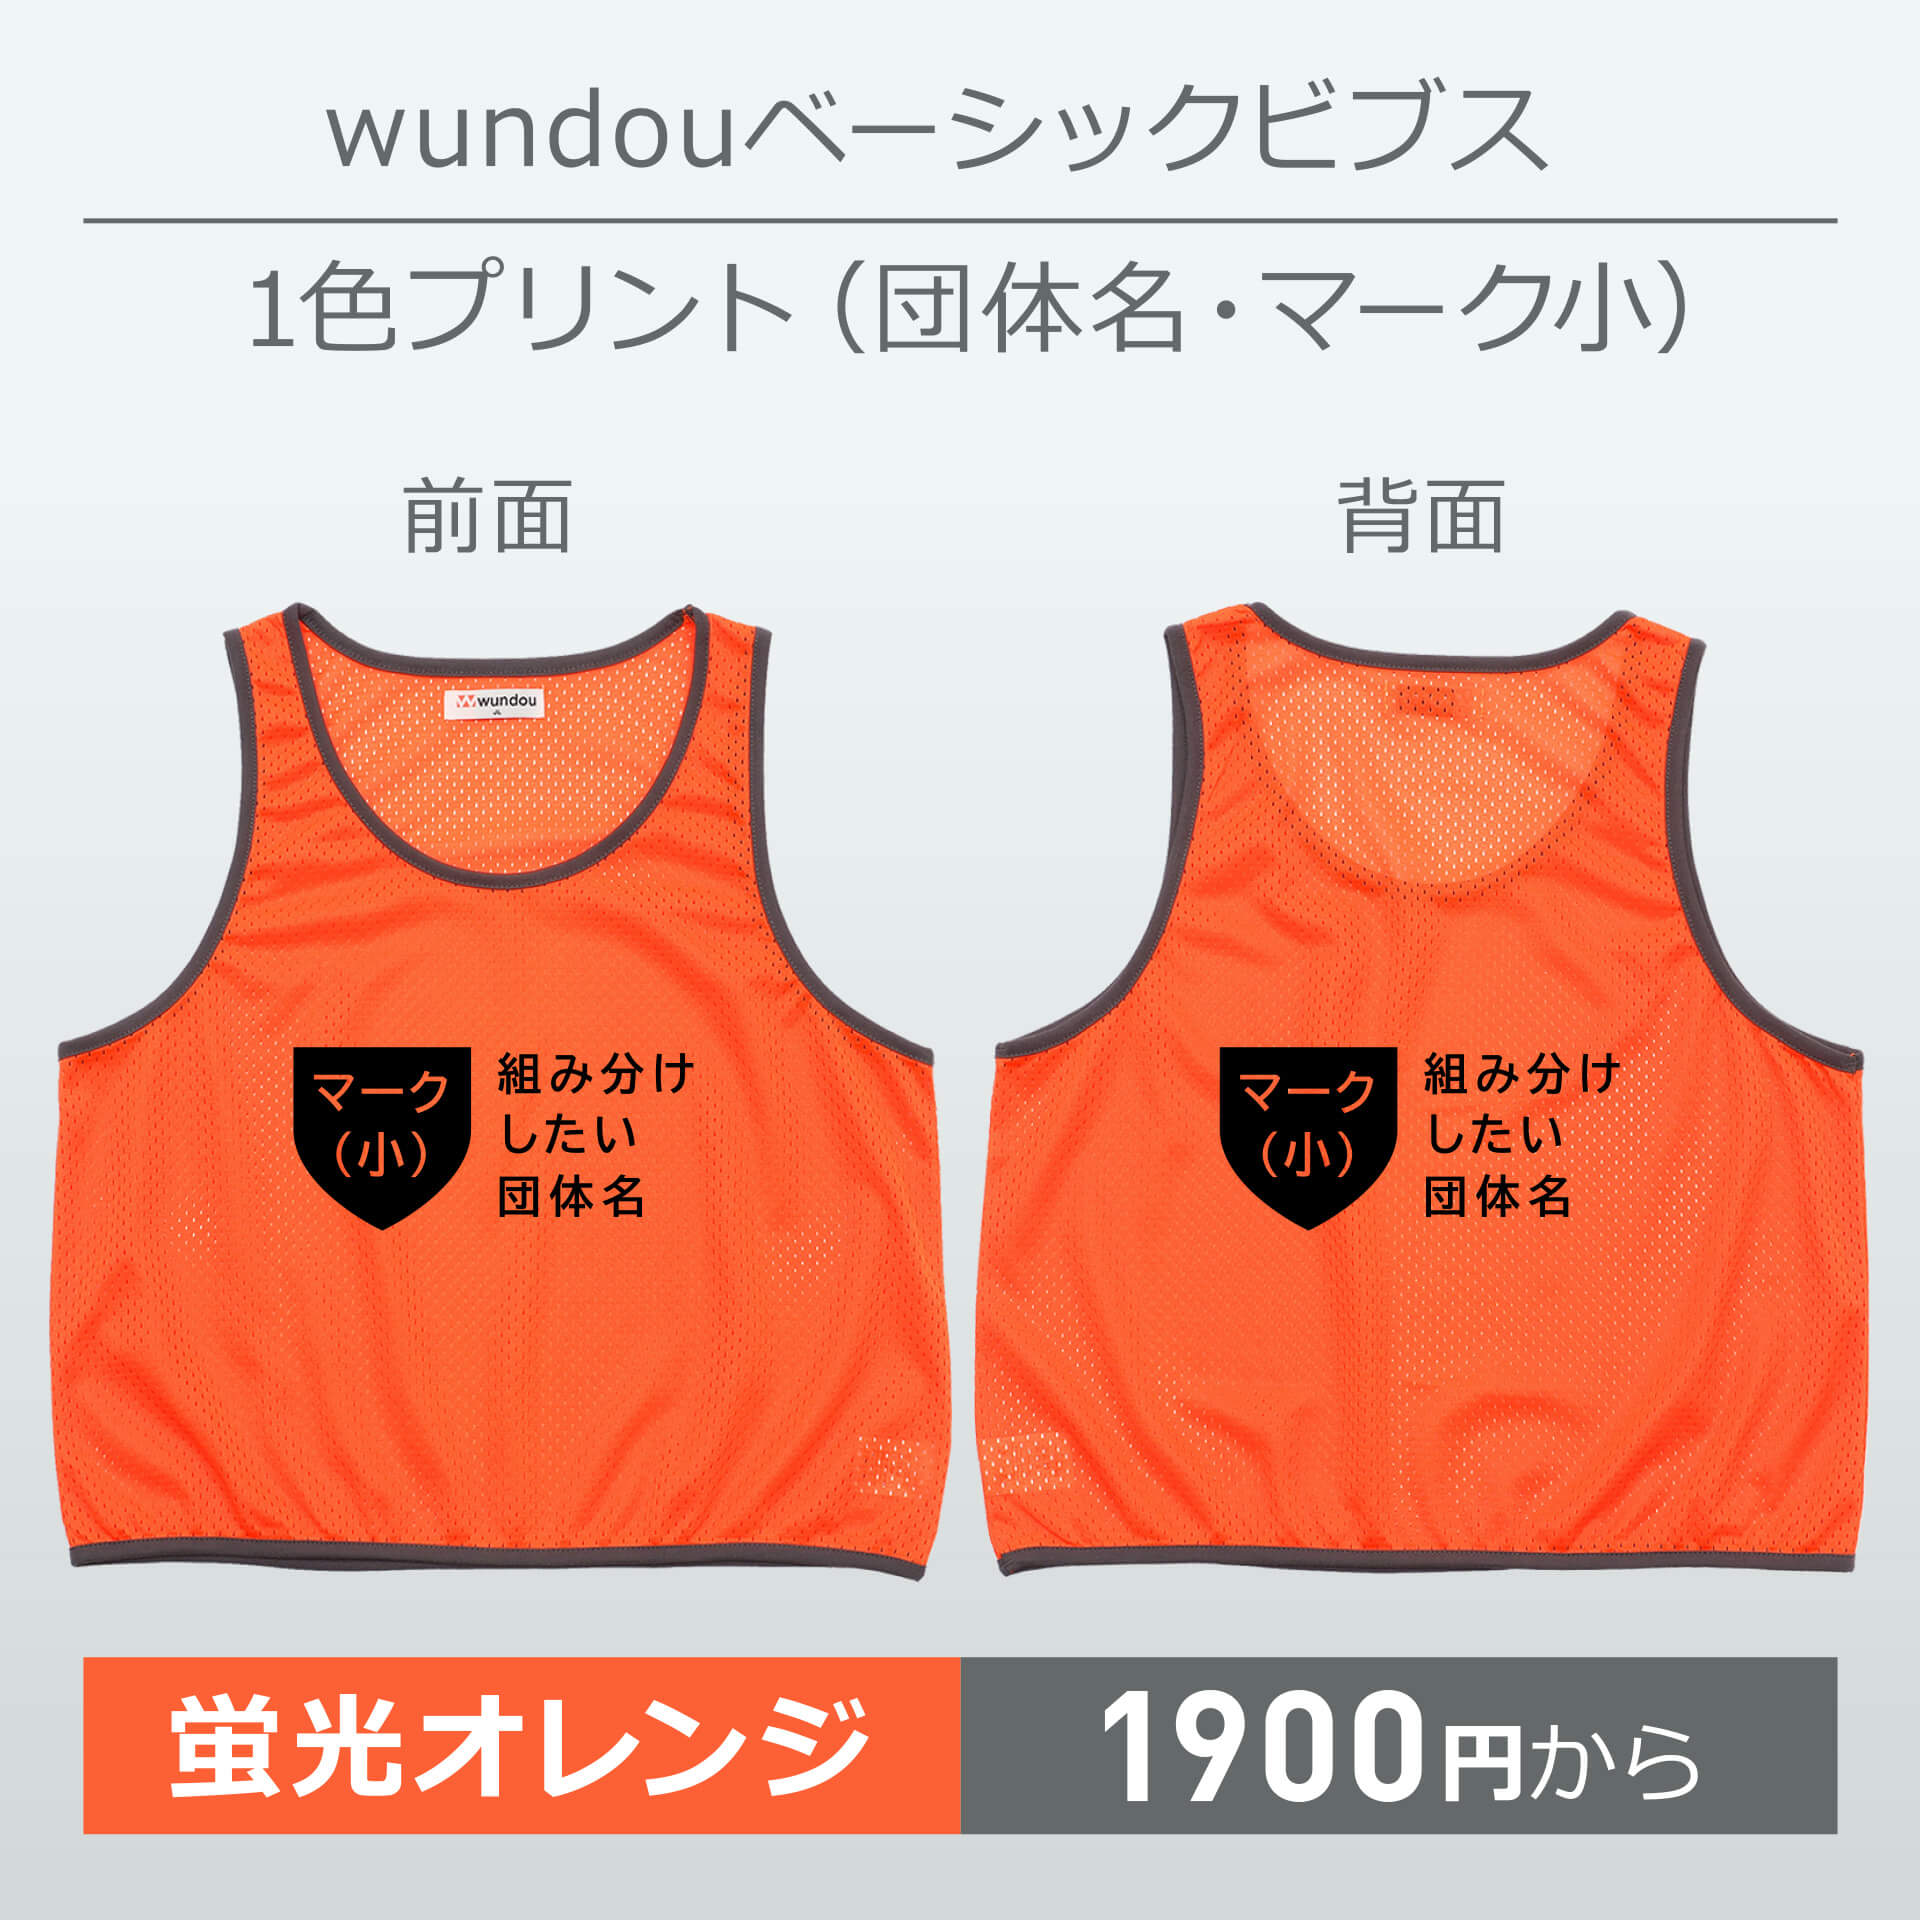 wundou・ベーシックビブス・1色プリント(団体名・マーク小)・蛍光オレンジ